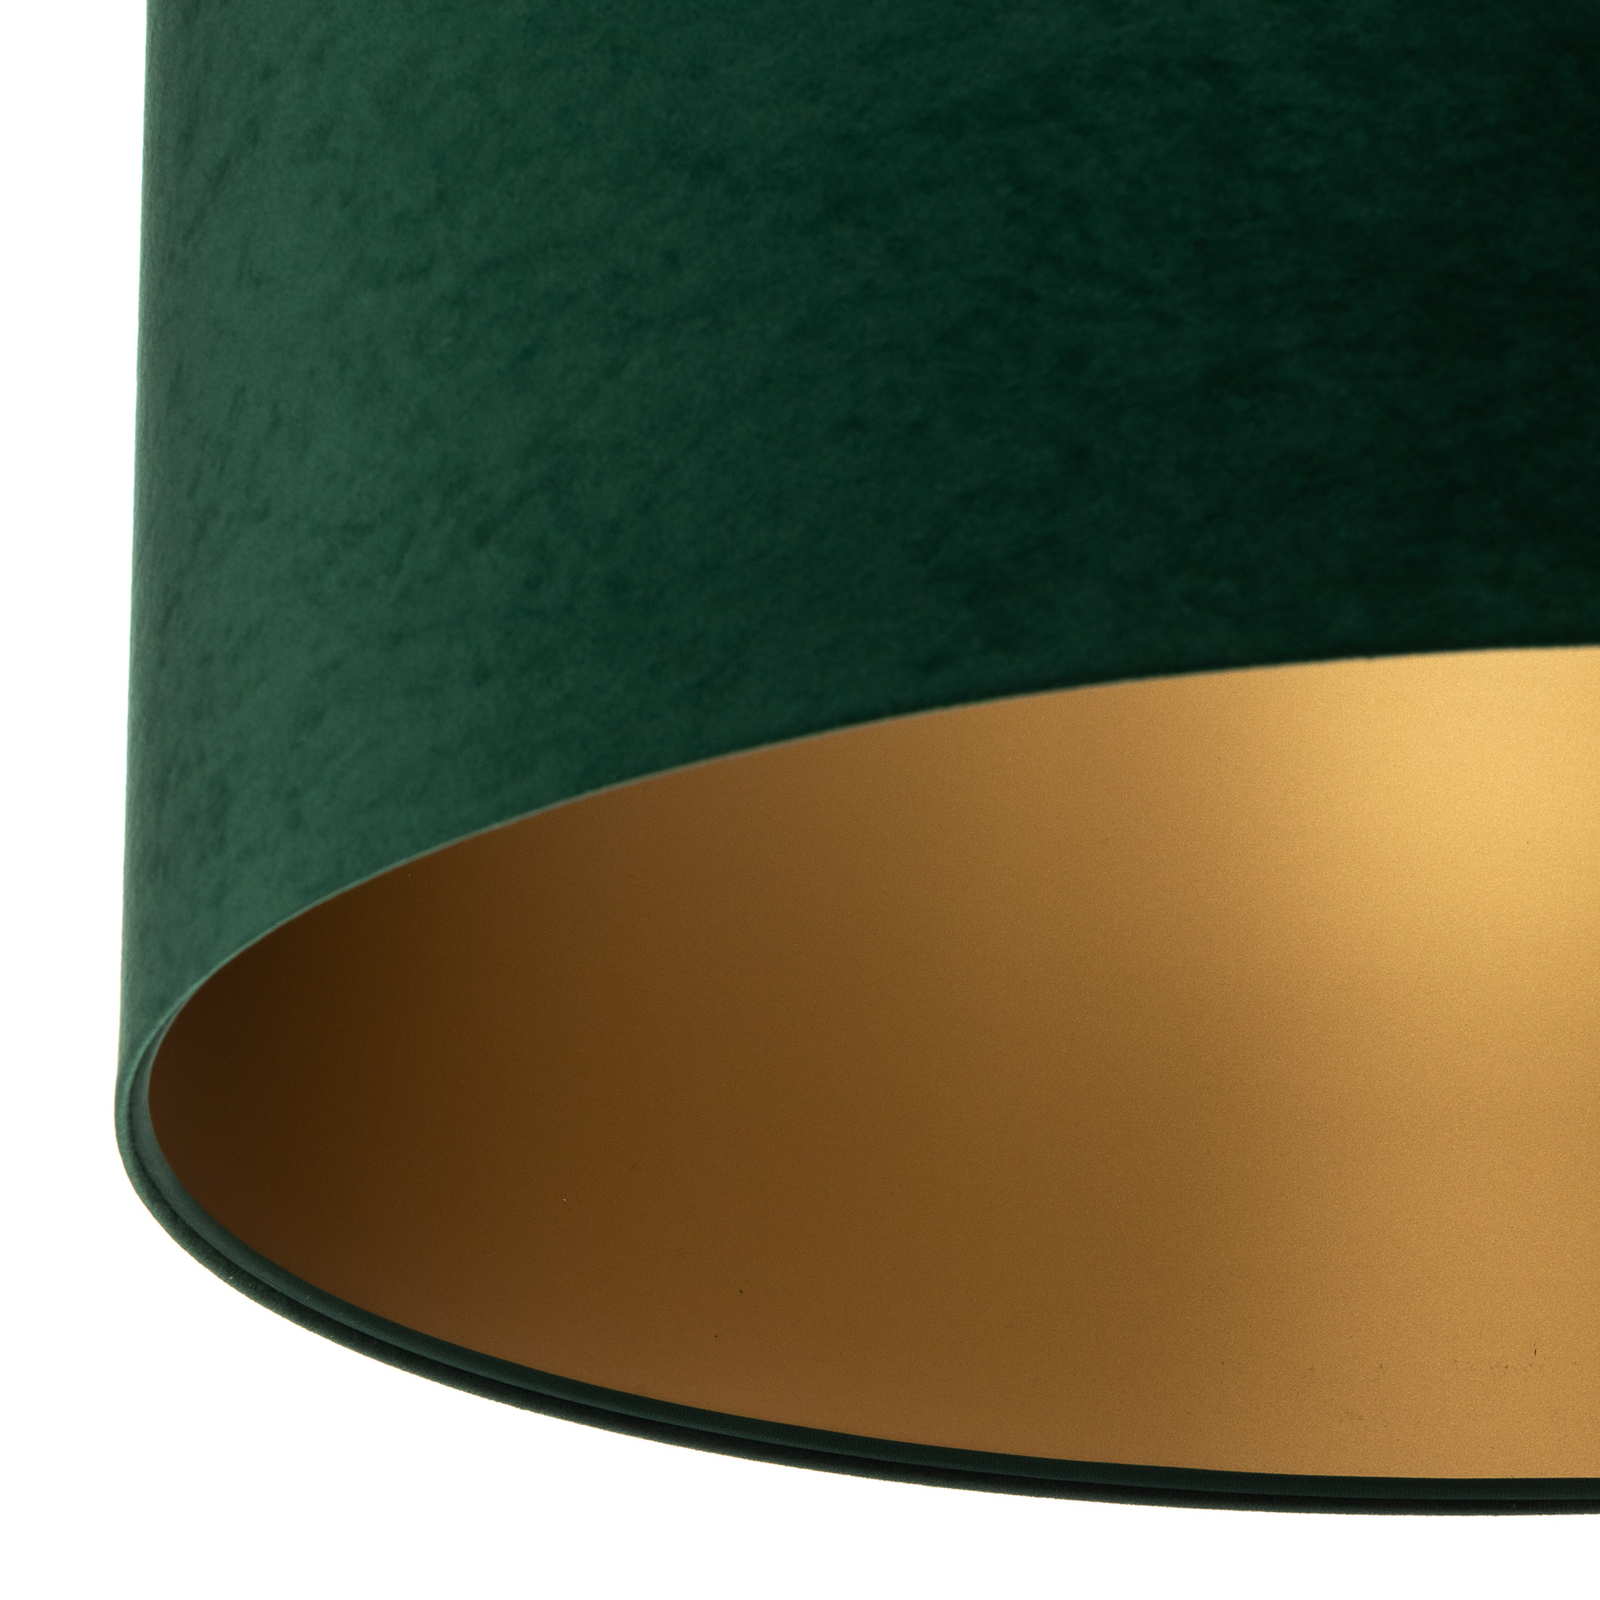 Lampa wisząca Salina, zielona/złota, Ø 60 cm